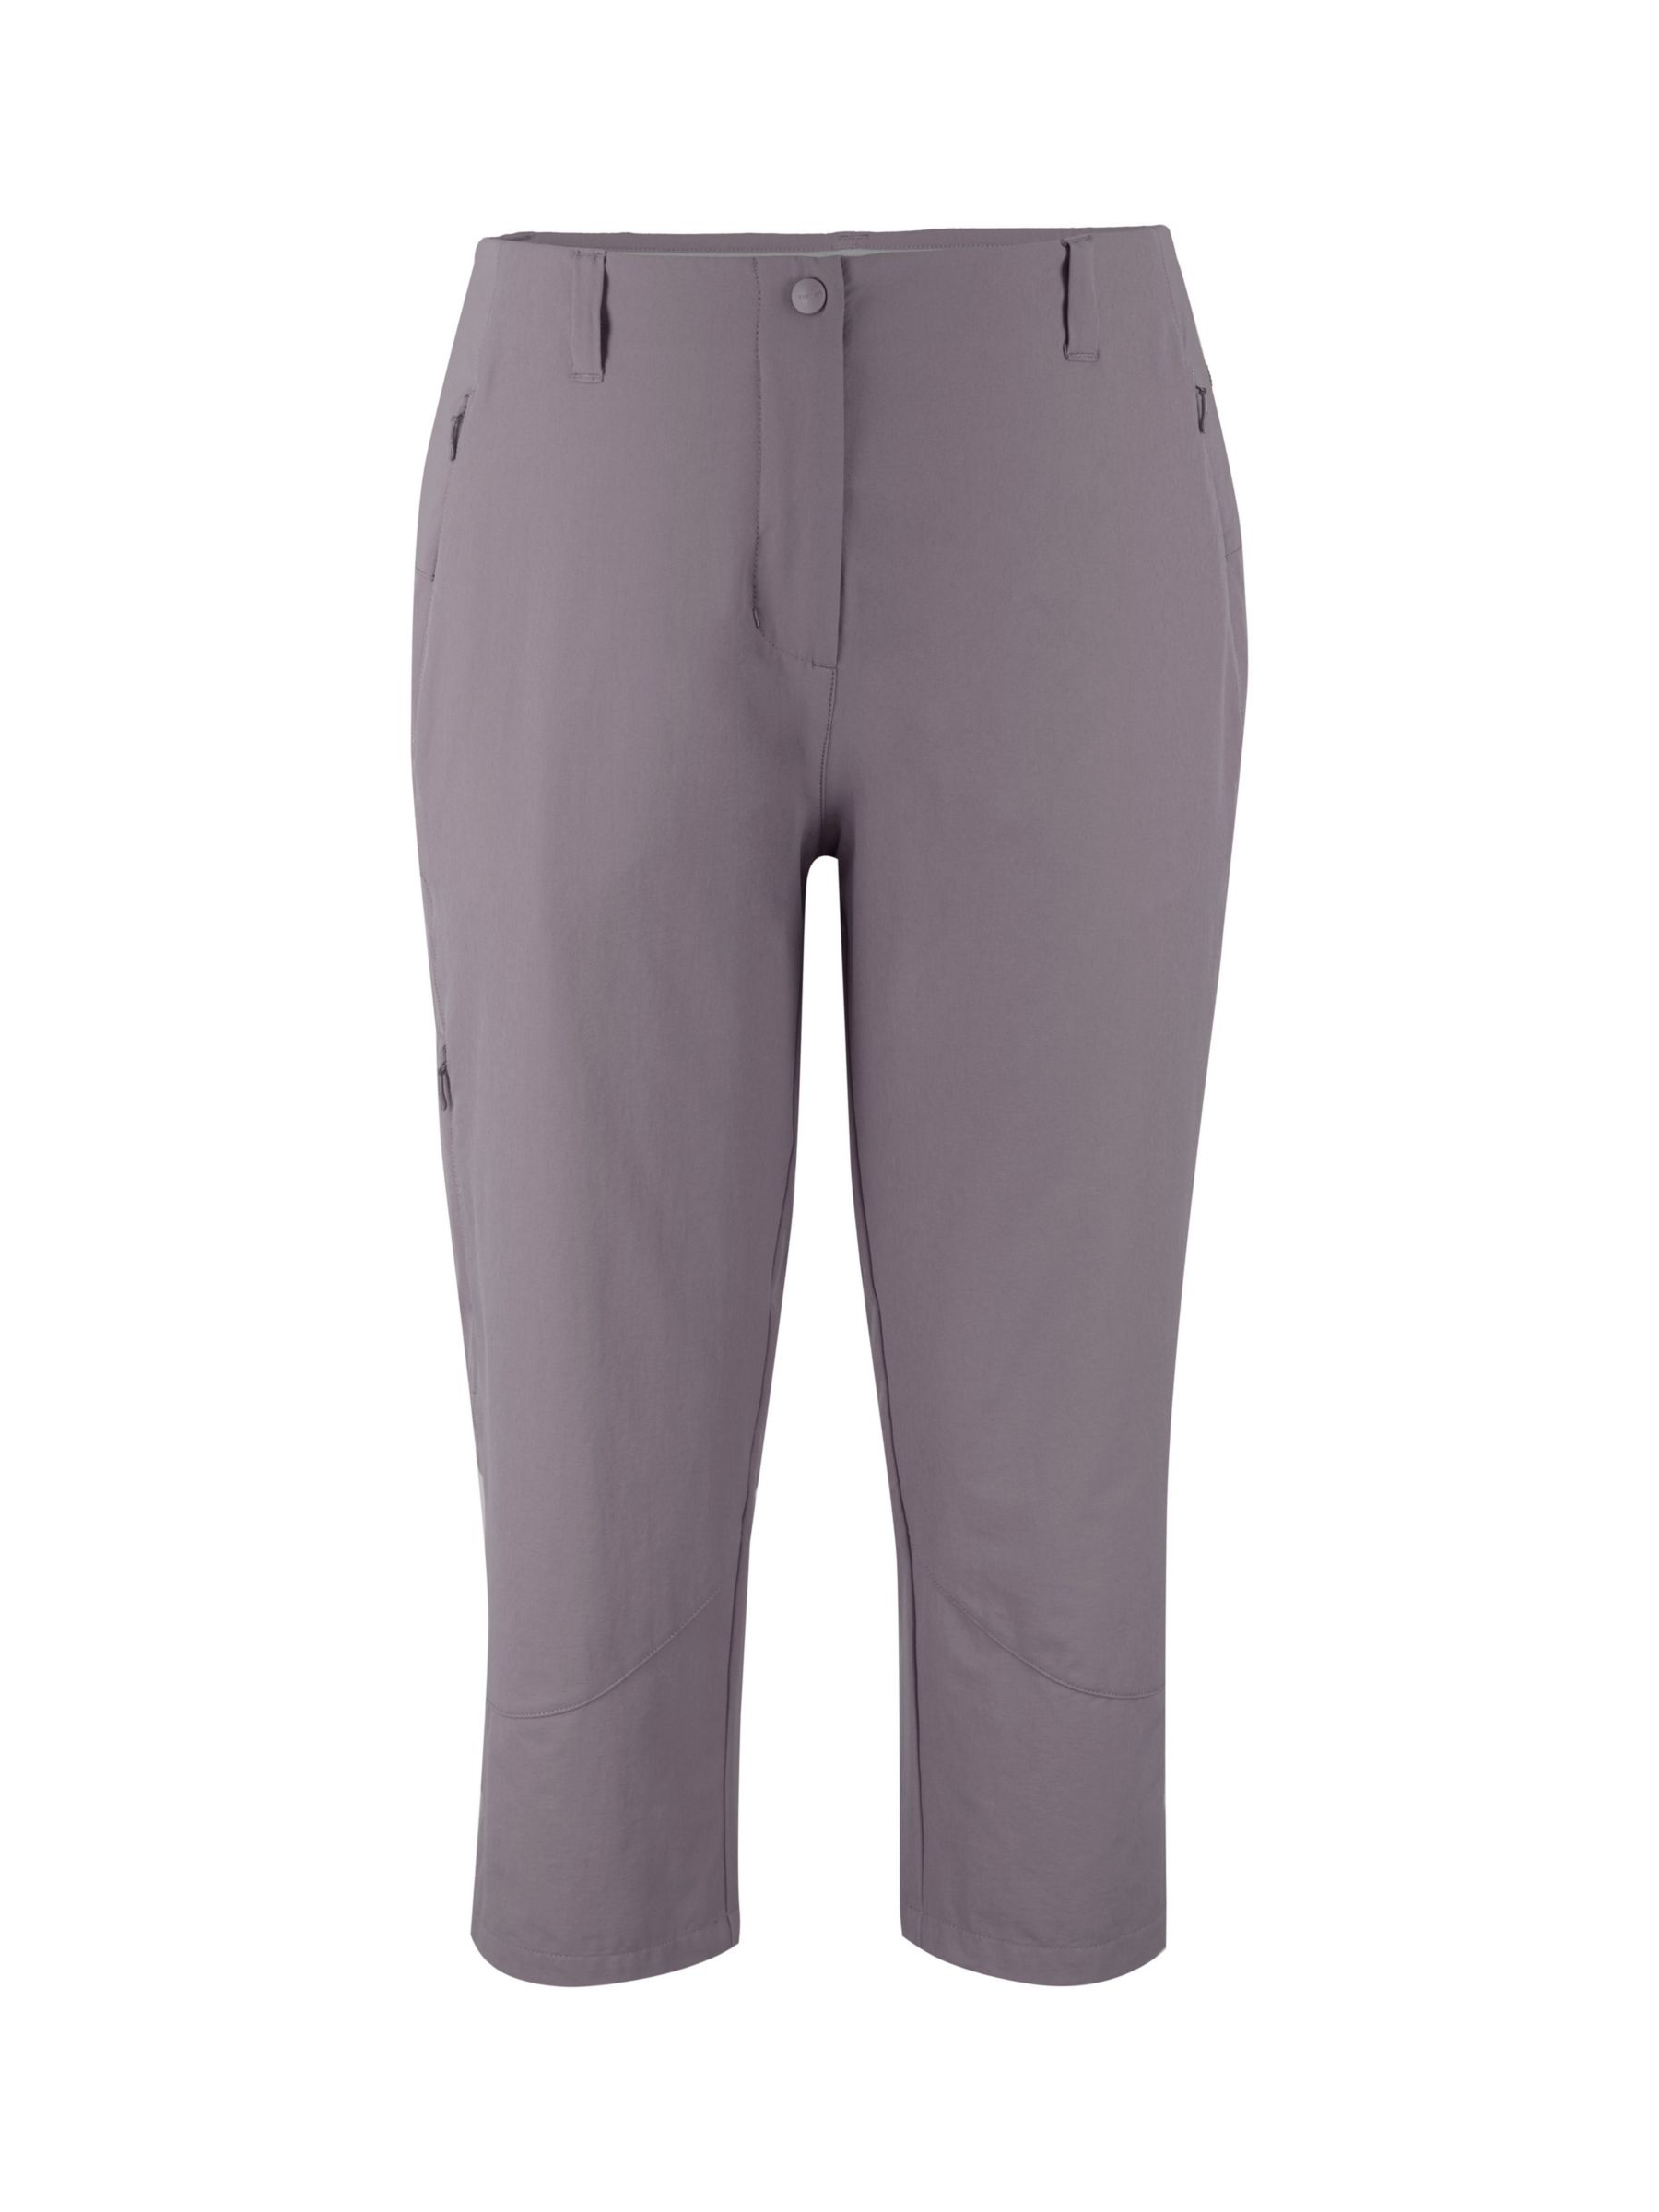 Buy Rohan Roamer Capri Walking Trousers Online at johnlewis.com